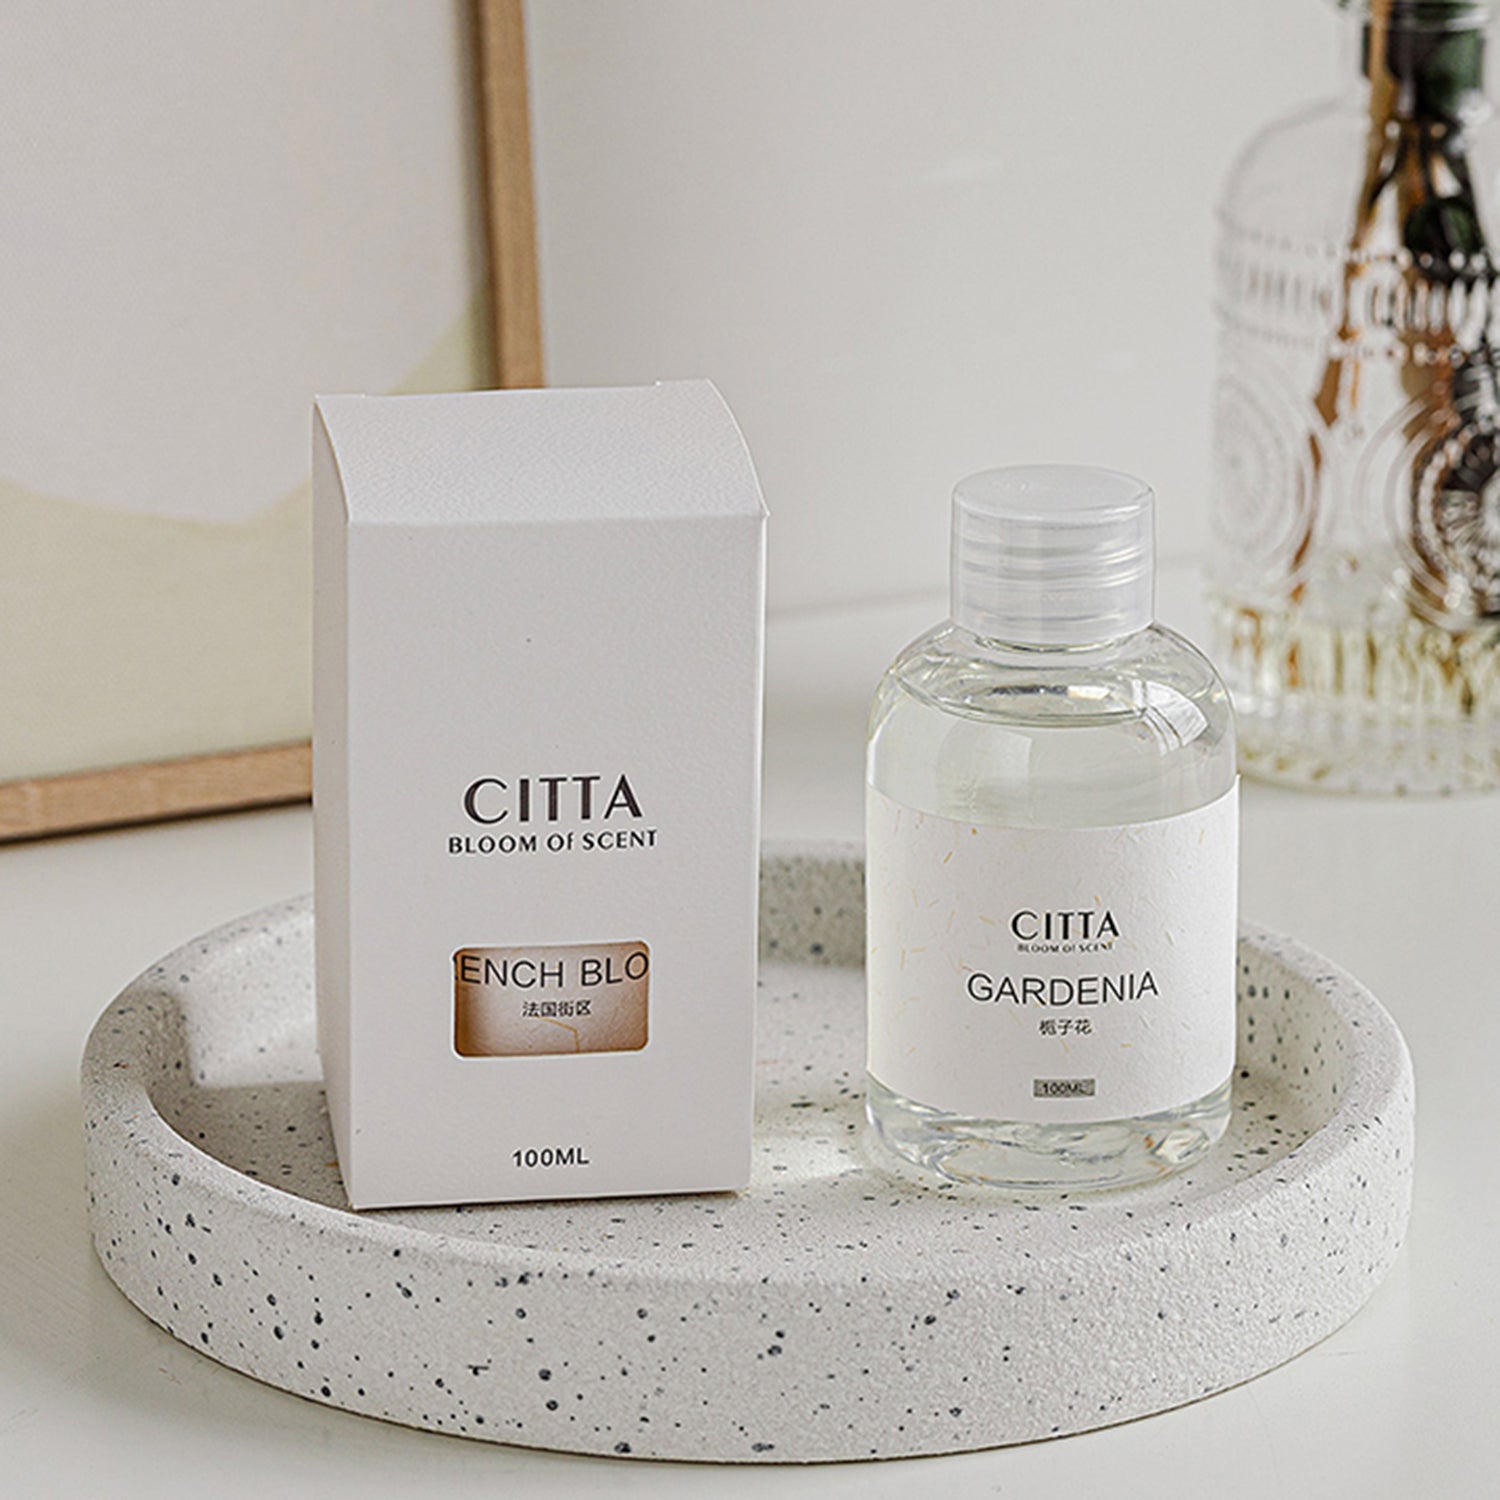 CITTA Premium Essential Oil 100ML Aromatherapy Reed Diffuser Refill Reed Diffuser Refill CITTA 